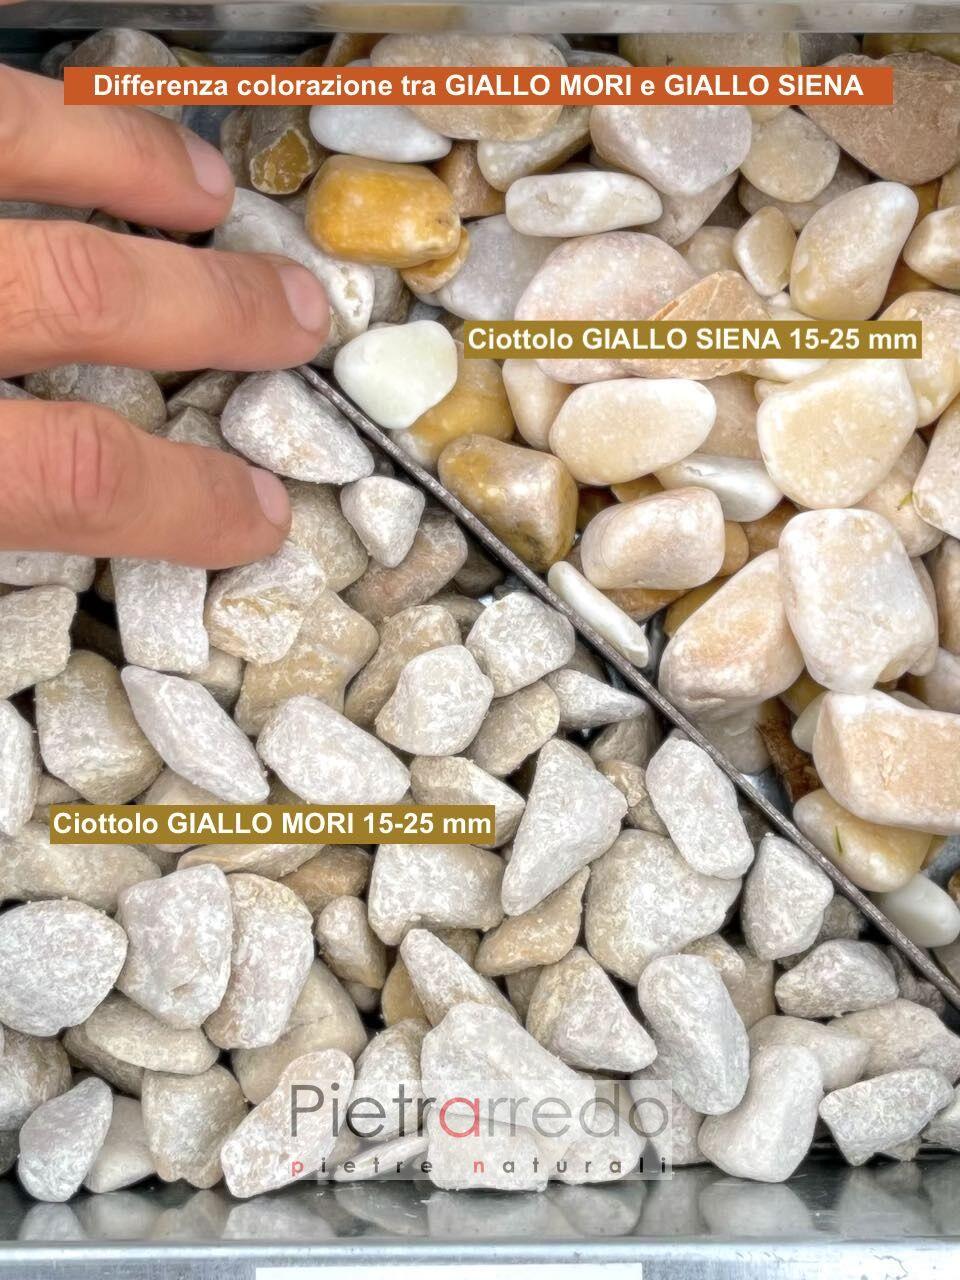 offerta ciottolo giallo siena e giallo miri differenza colore prezzo pietrarredo yellow pebbles